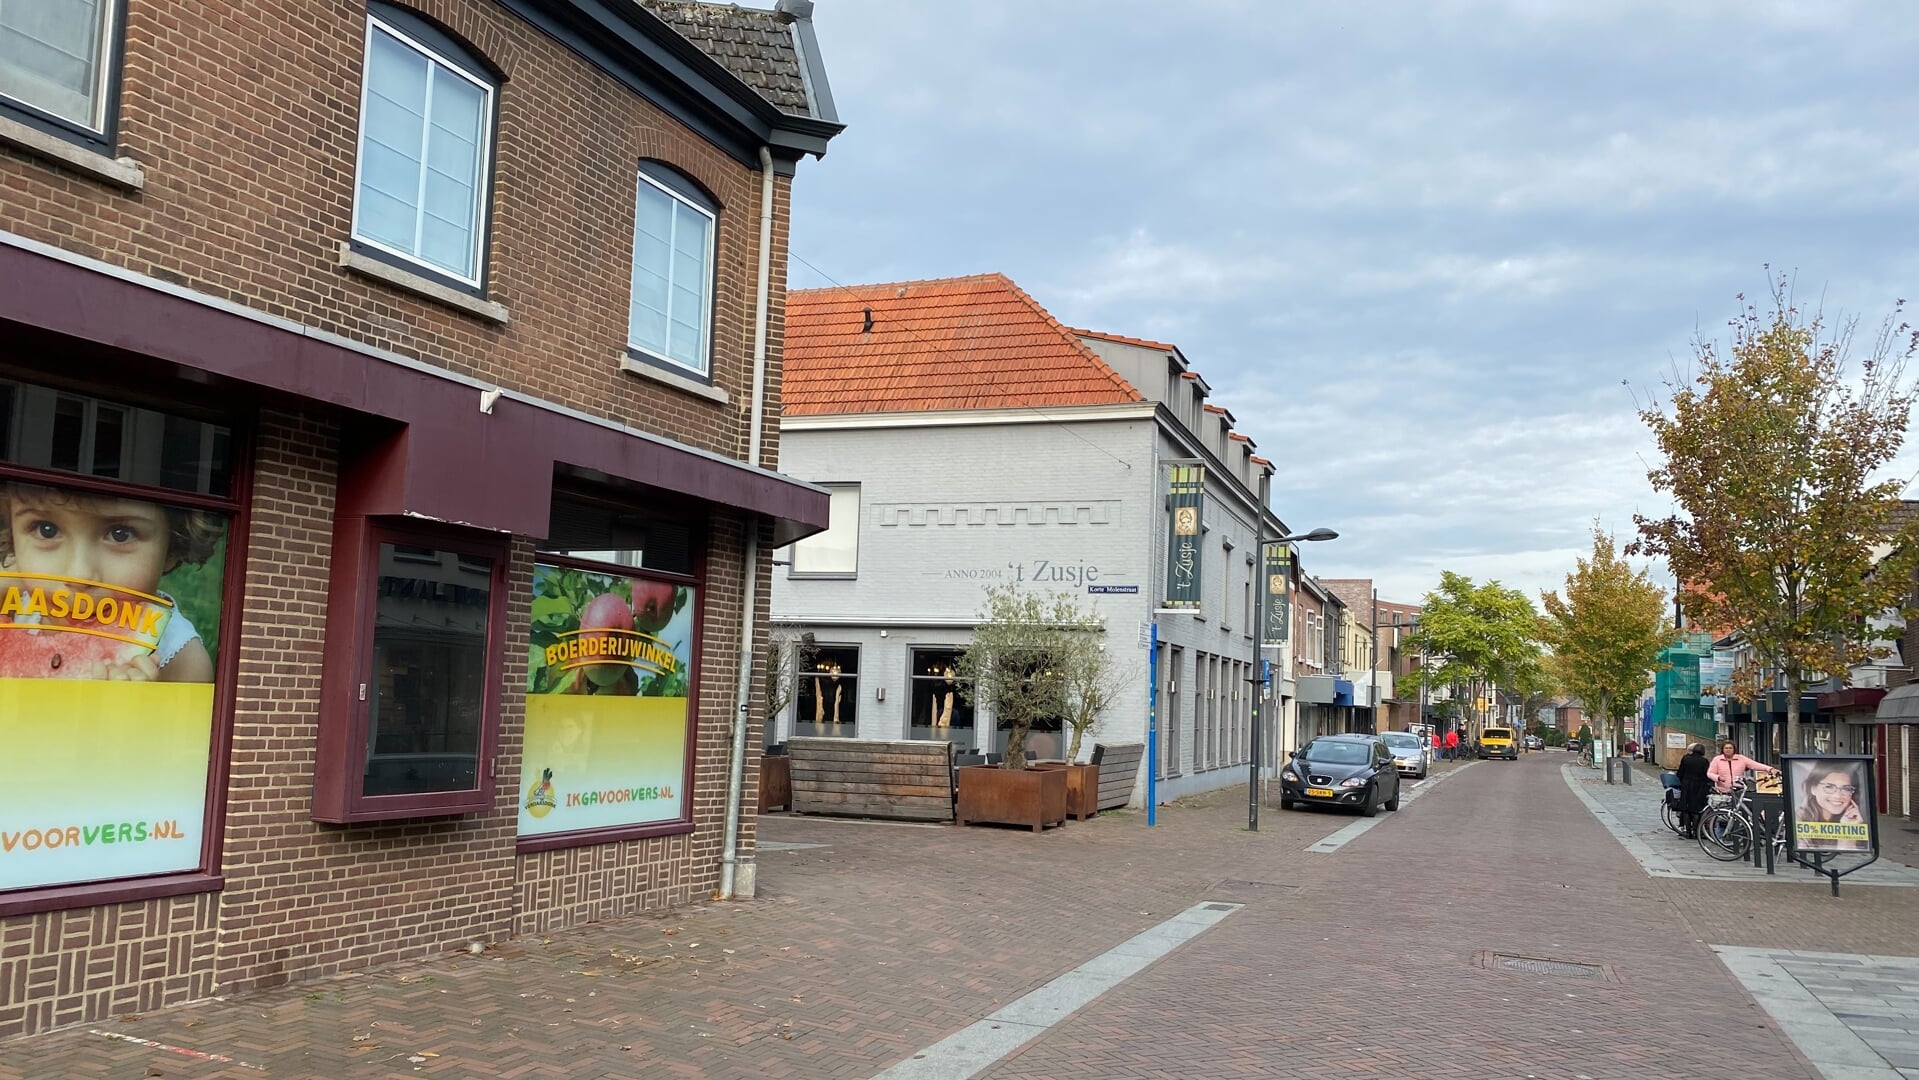 De Grotestraat in Cuijk kent inmiddels meerdere leegstaande panden door de energiecrisis.